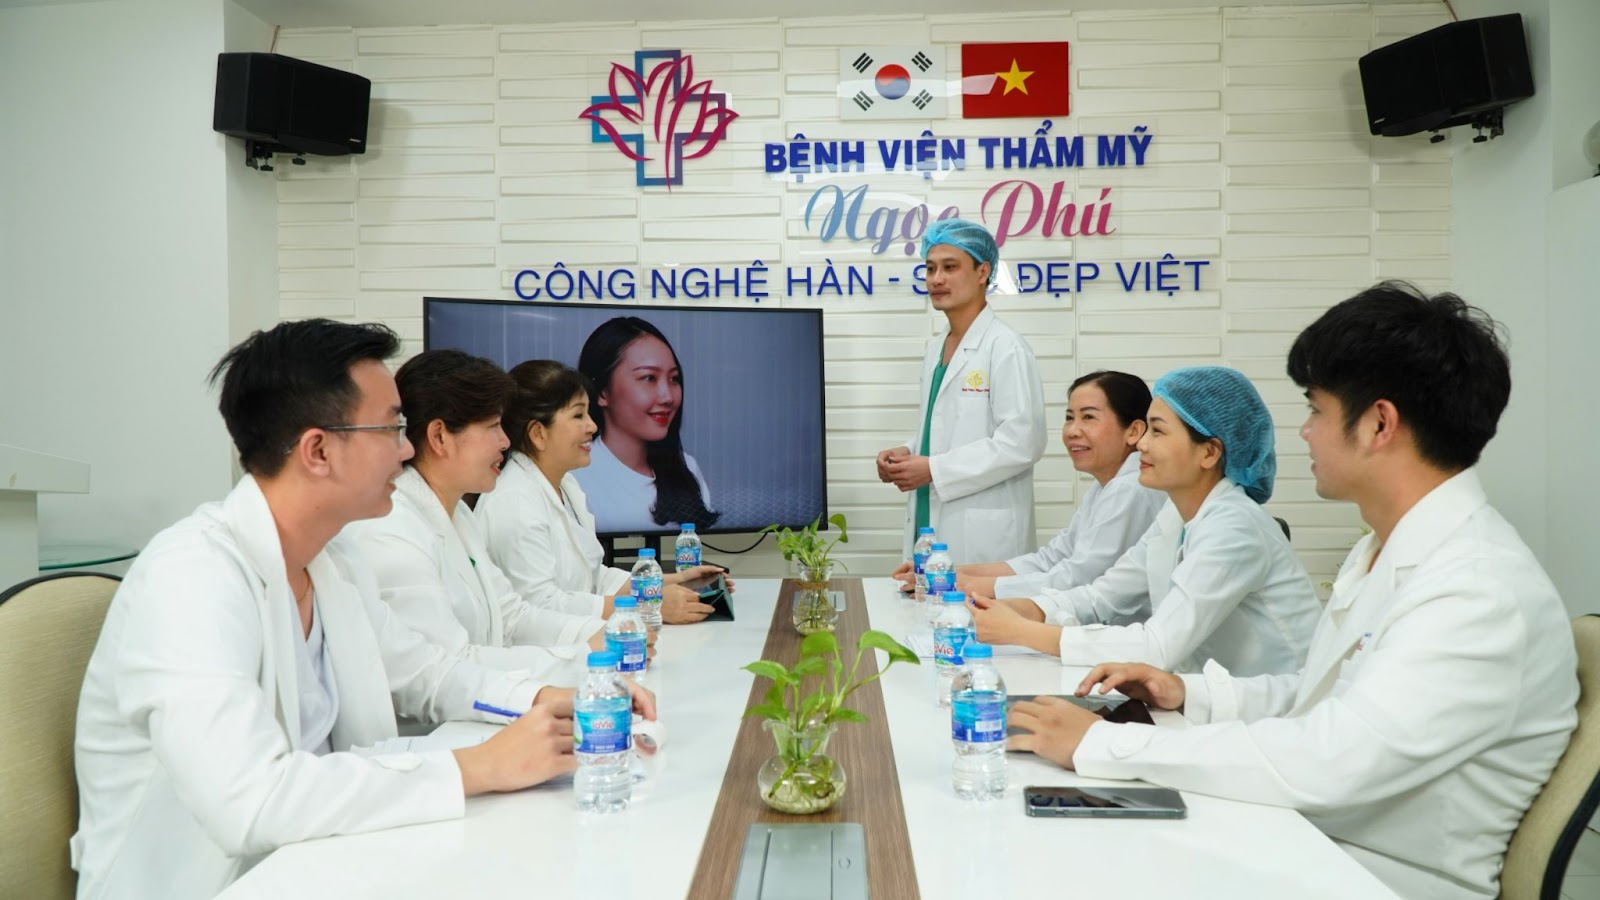 Khi đến với Bệnh viện Thẩm mỹ Ngọc Phú, chị em không chỉ chìm đắm trong không gian đẳng cấp của bệnh viện Quốc tế mà còn được tư vấn tận tình, giới thiệu các công nghệ làm đẹp tiên tiến